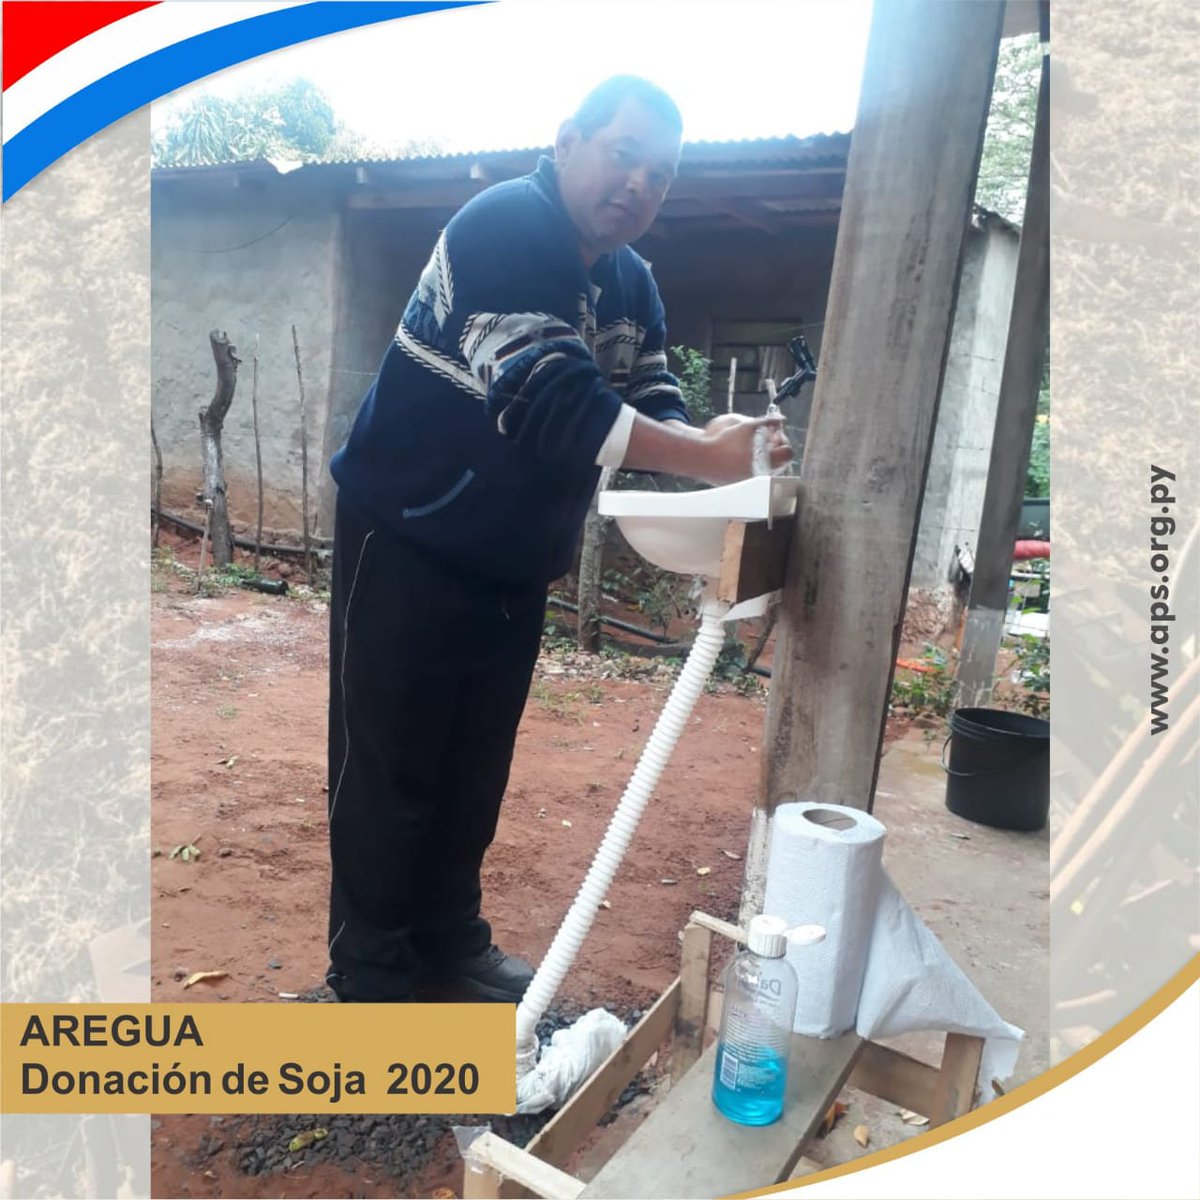 #Aregua
📸Gentileza del Sr. Cristóbal Riveros, colaborador de la vaca mecánica ubicada en una zona de Caacupemi.
De aquí muchas familias diariamente llevan para sus hogares la conocida leche de soja o jugo de soja.🥛

#FuerzaParaguay  #lechedesoja #DonaciónSoja